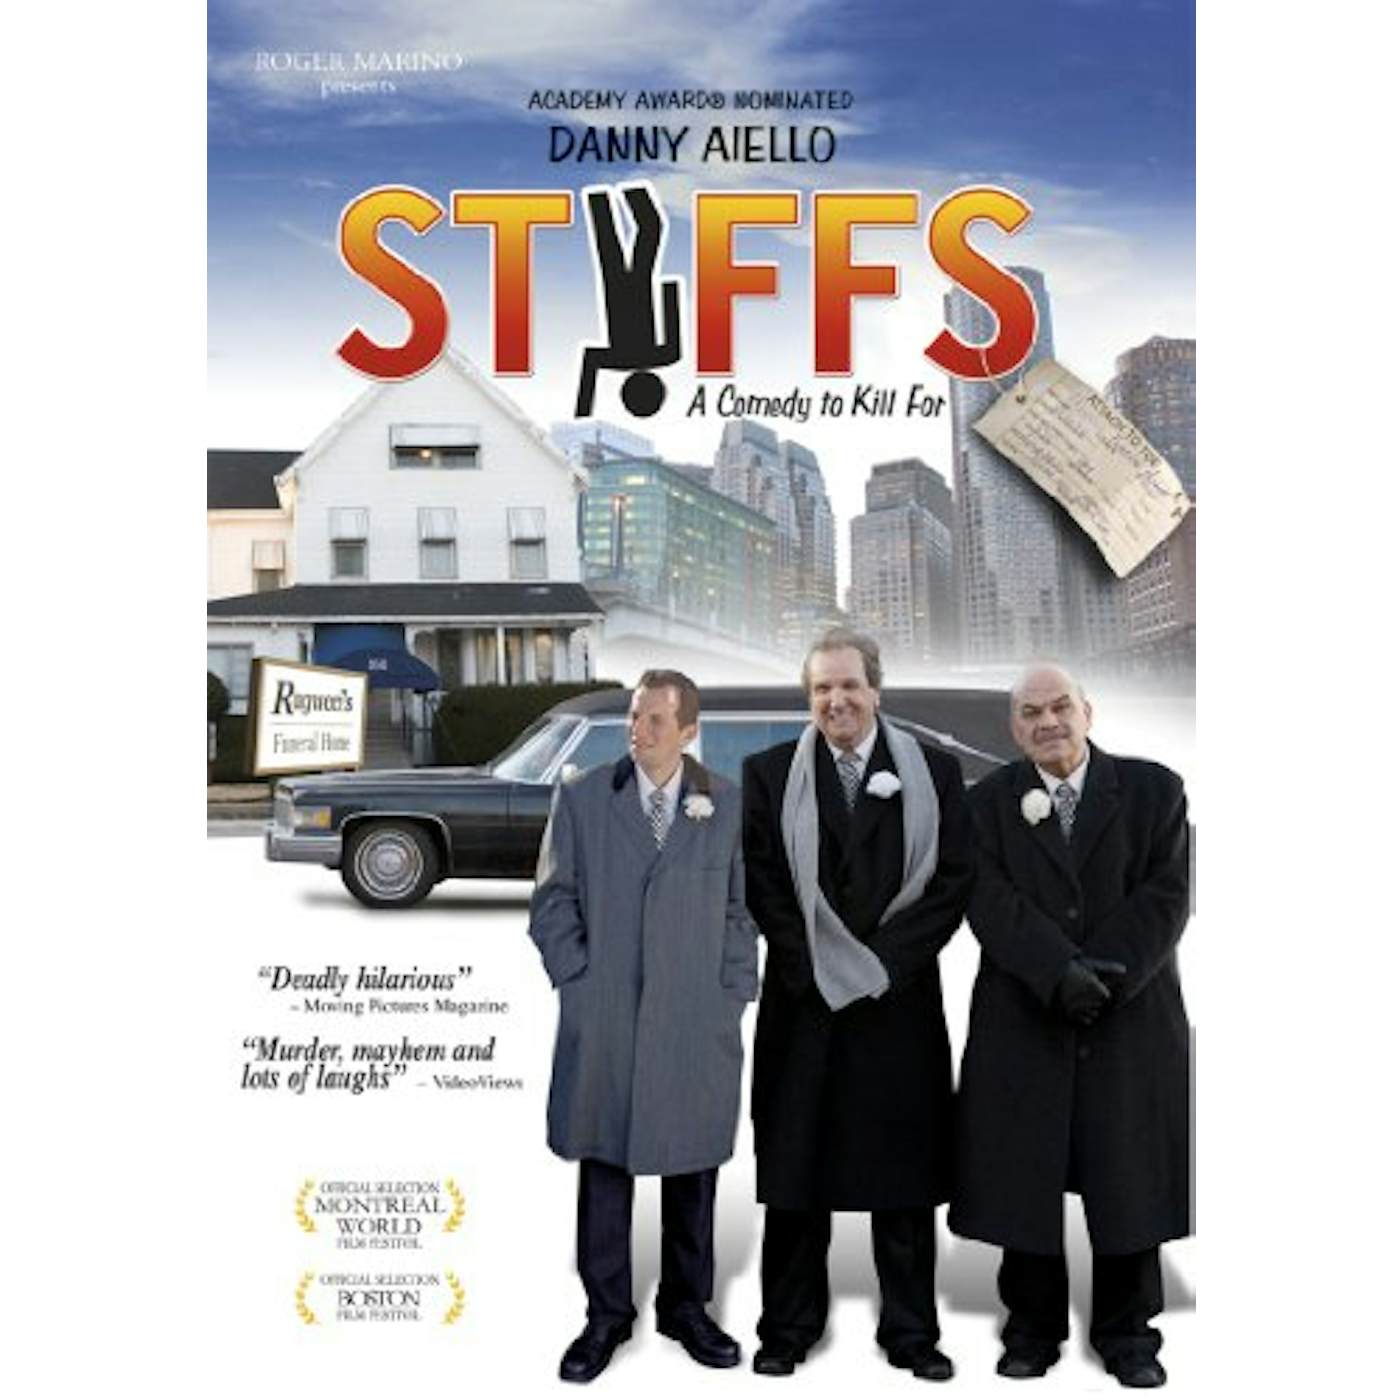 The Stiffs DVD